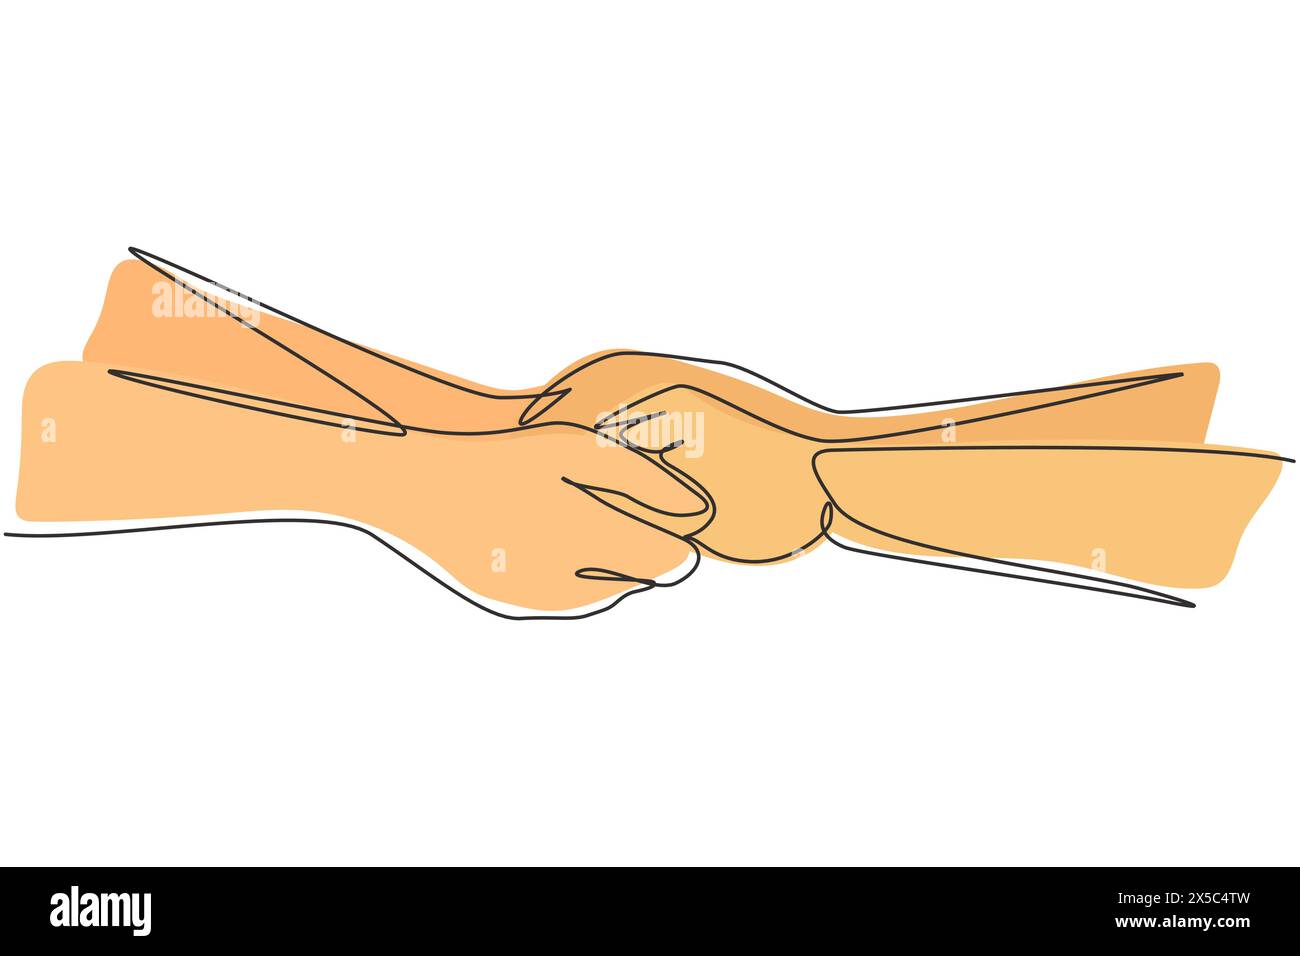 Una sola linea disegnando due mani che si tengono l'una con l'altra. Segno o simbolo di amore, relazione, coppia, matrimonio. Comunicazione con i gesti delle mani. Contin Illustrazione Vettoriale